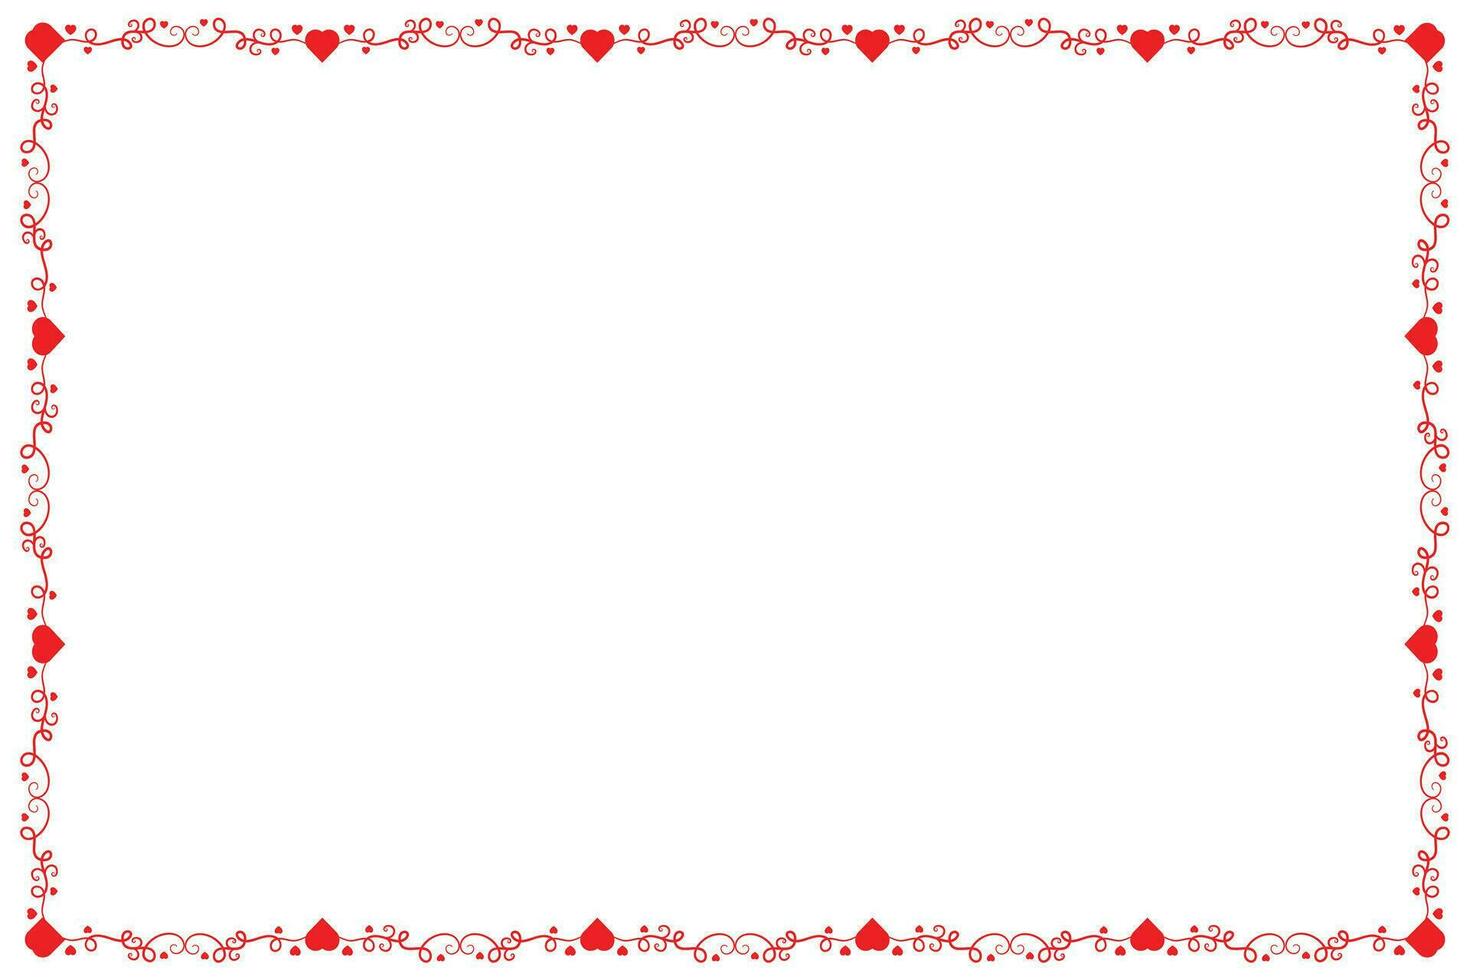 Herz Strudel romantisch Liebe Ornamente isoliert Rand Layout, rot Herzen aufwendig vergeben Rahmen Grenze, Valentinsgrüße Tag Karte Rand Platz Rahmen Design, dekorativ Herz Rechteck Rahmen Vektor Element